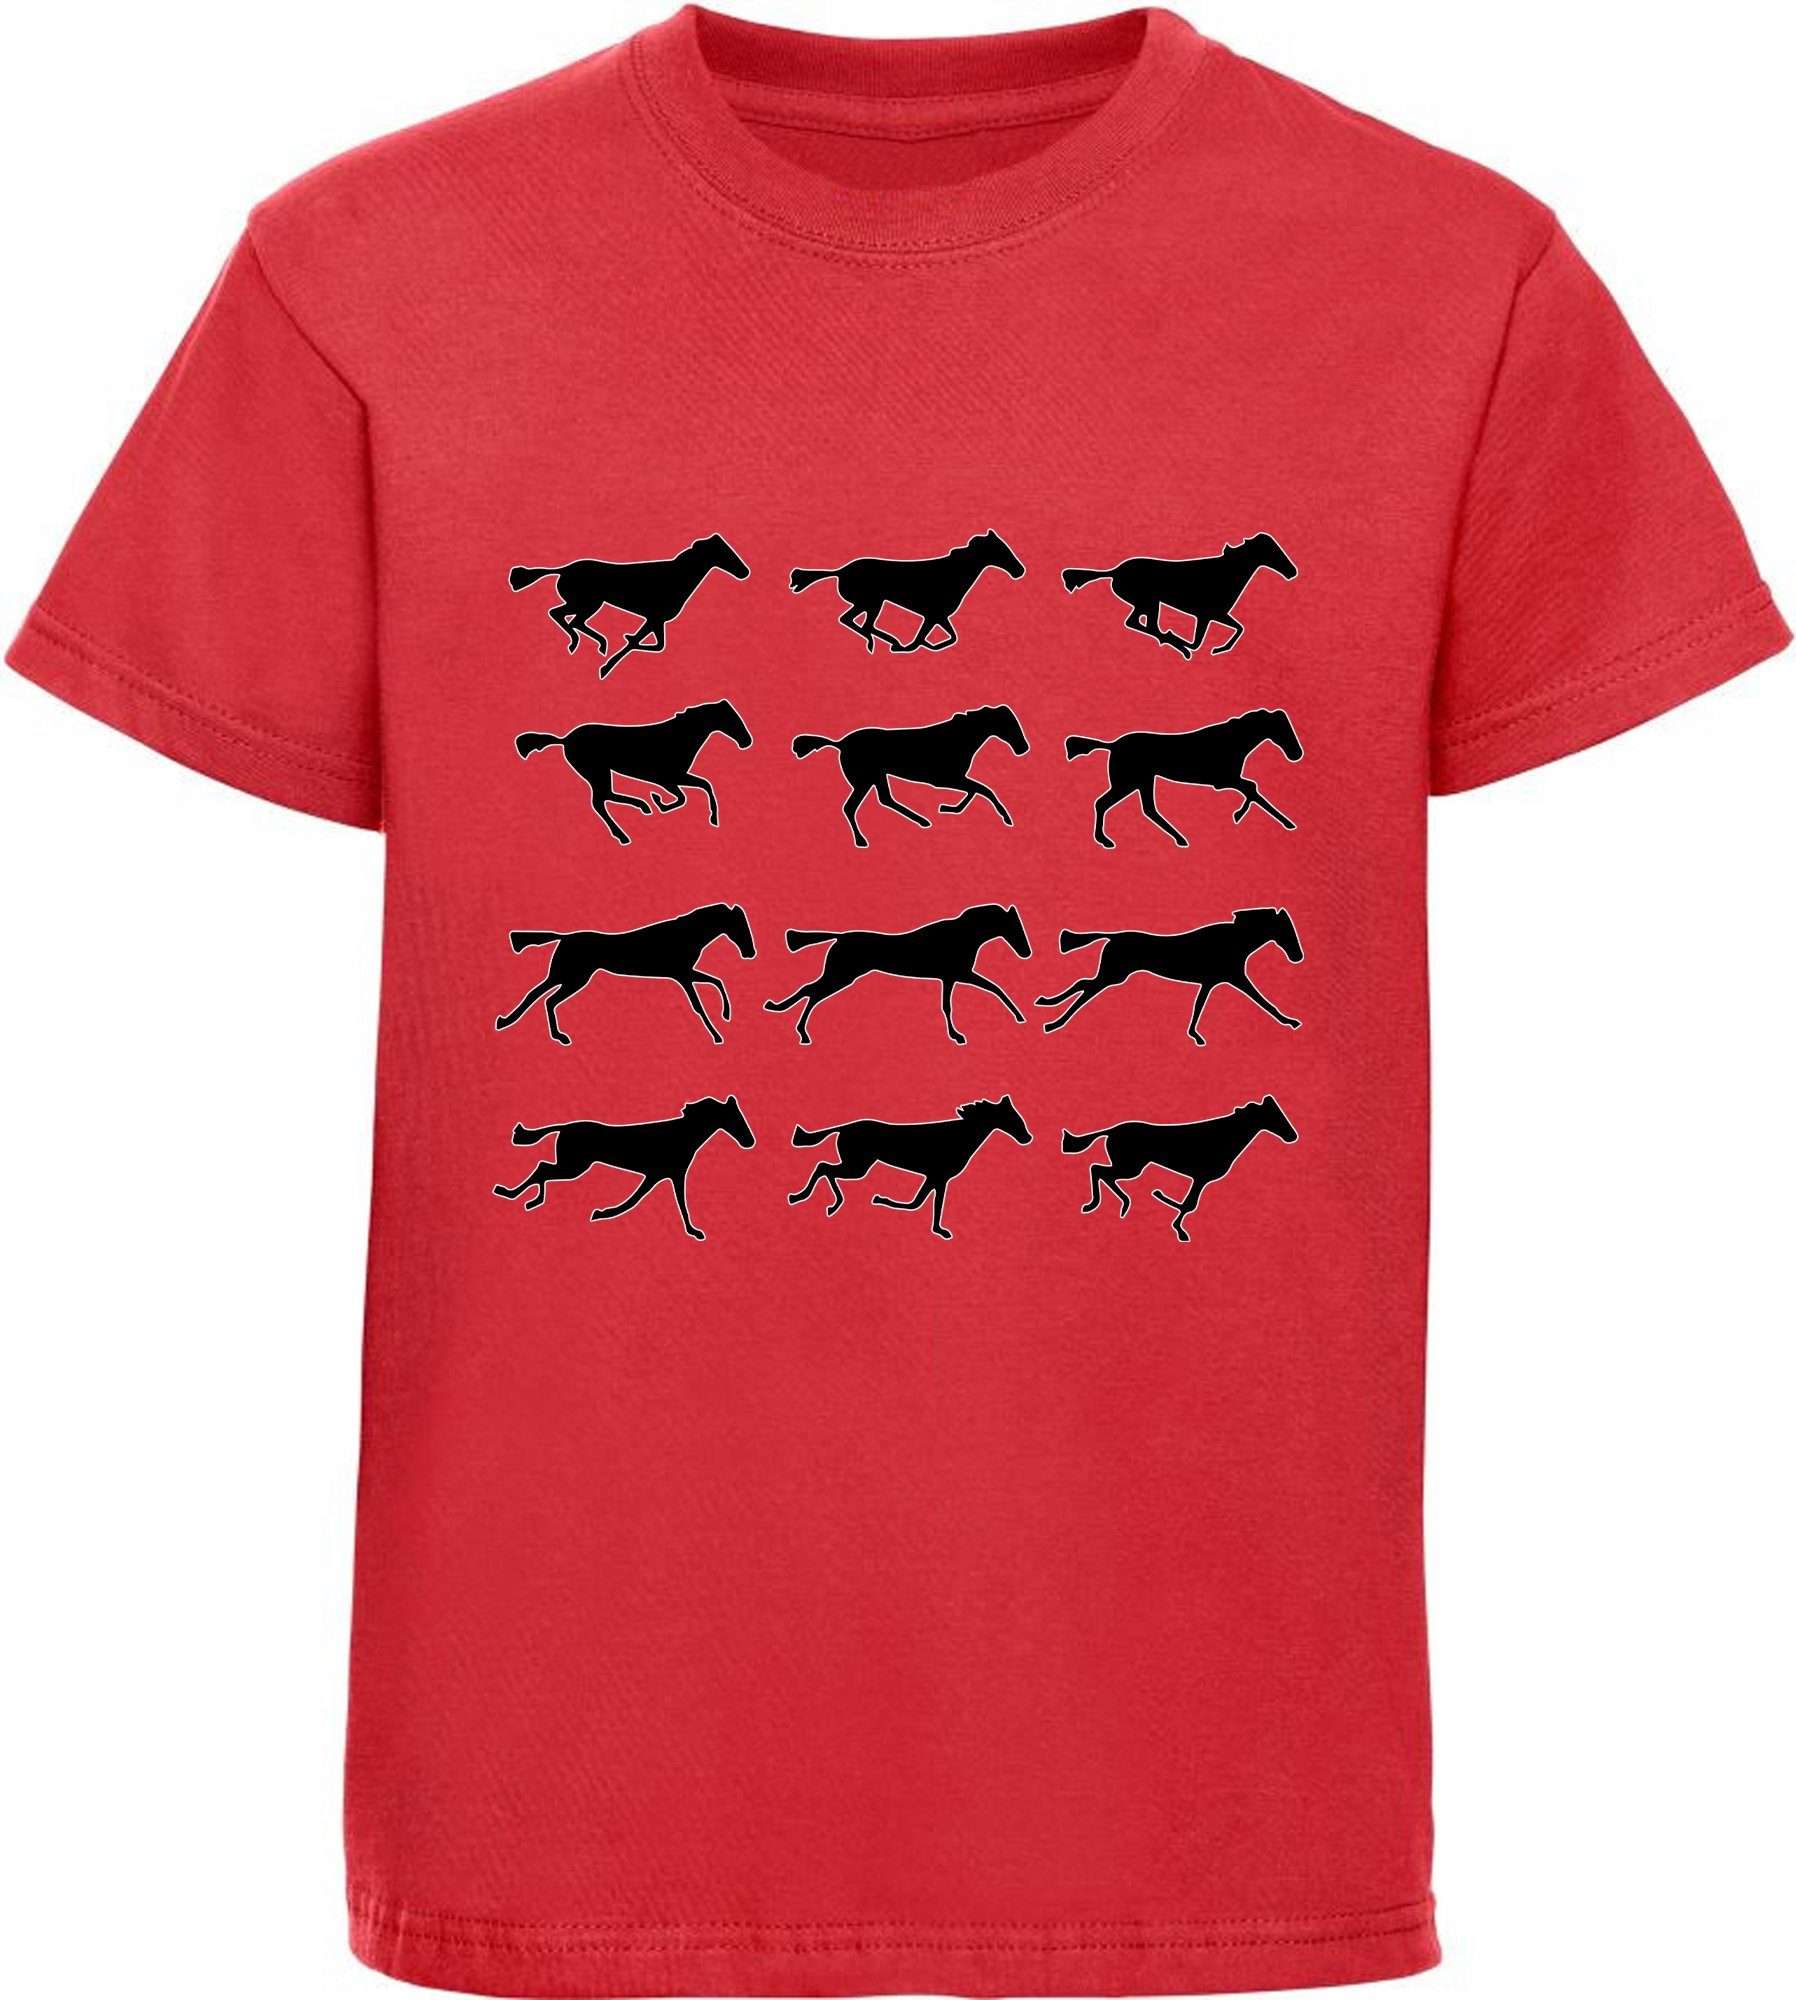 MyDesign24 Print-Shirt bedrucktes Mädchen T-Shirt - Silhouetten von Pferden Baumwollshirt mit Aufdruck, i173 rot